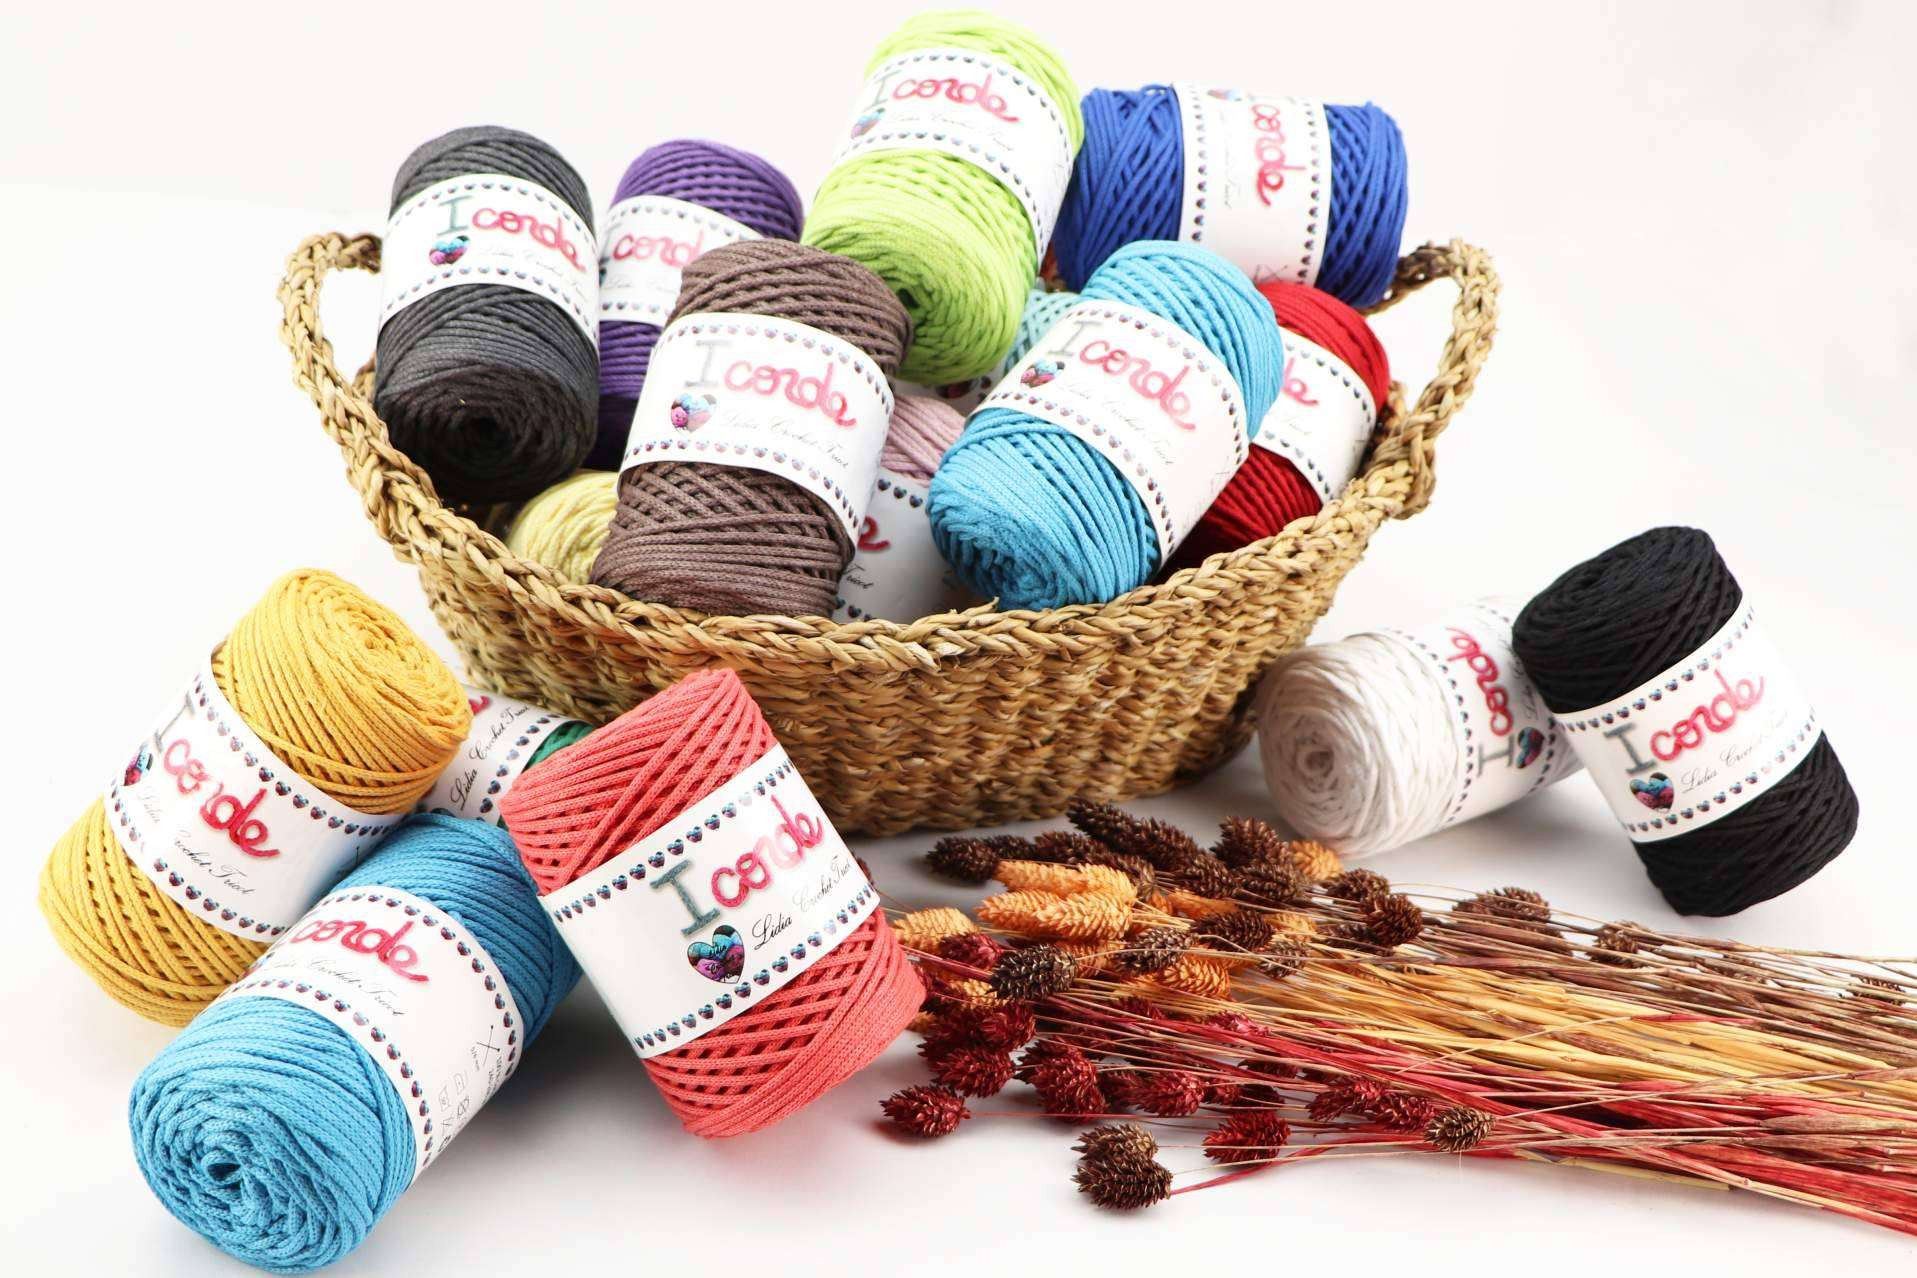  Beneficios del algodón reciclado que se usa para elaborar el hilo I-corde de Lidia Crochet Tricot 